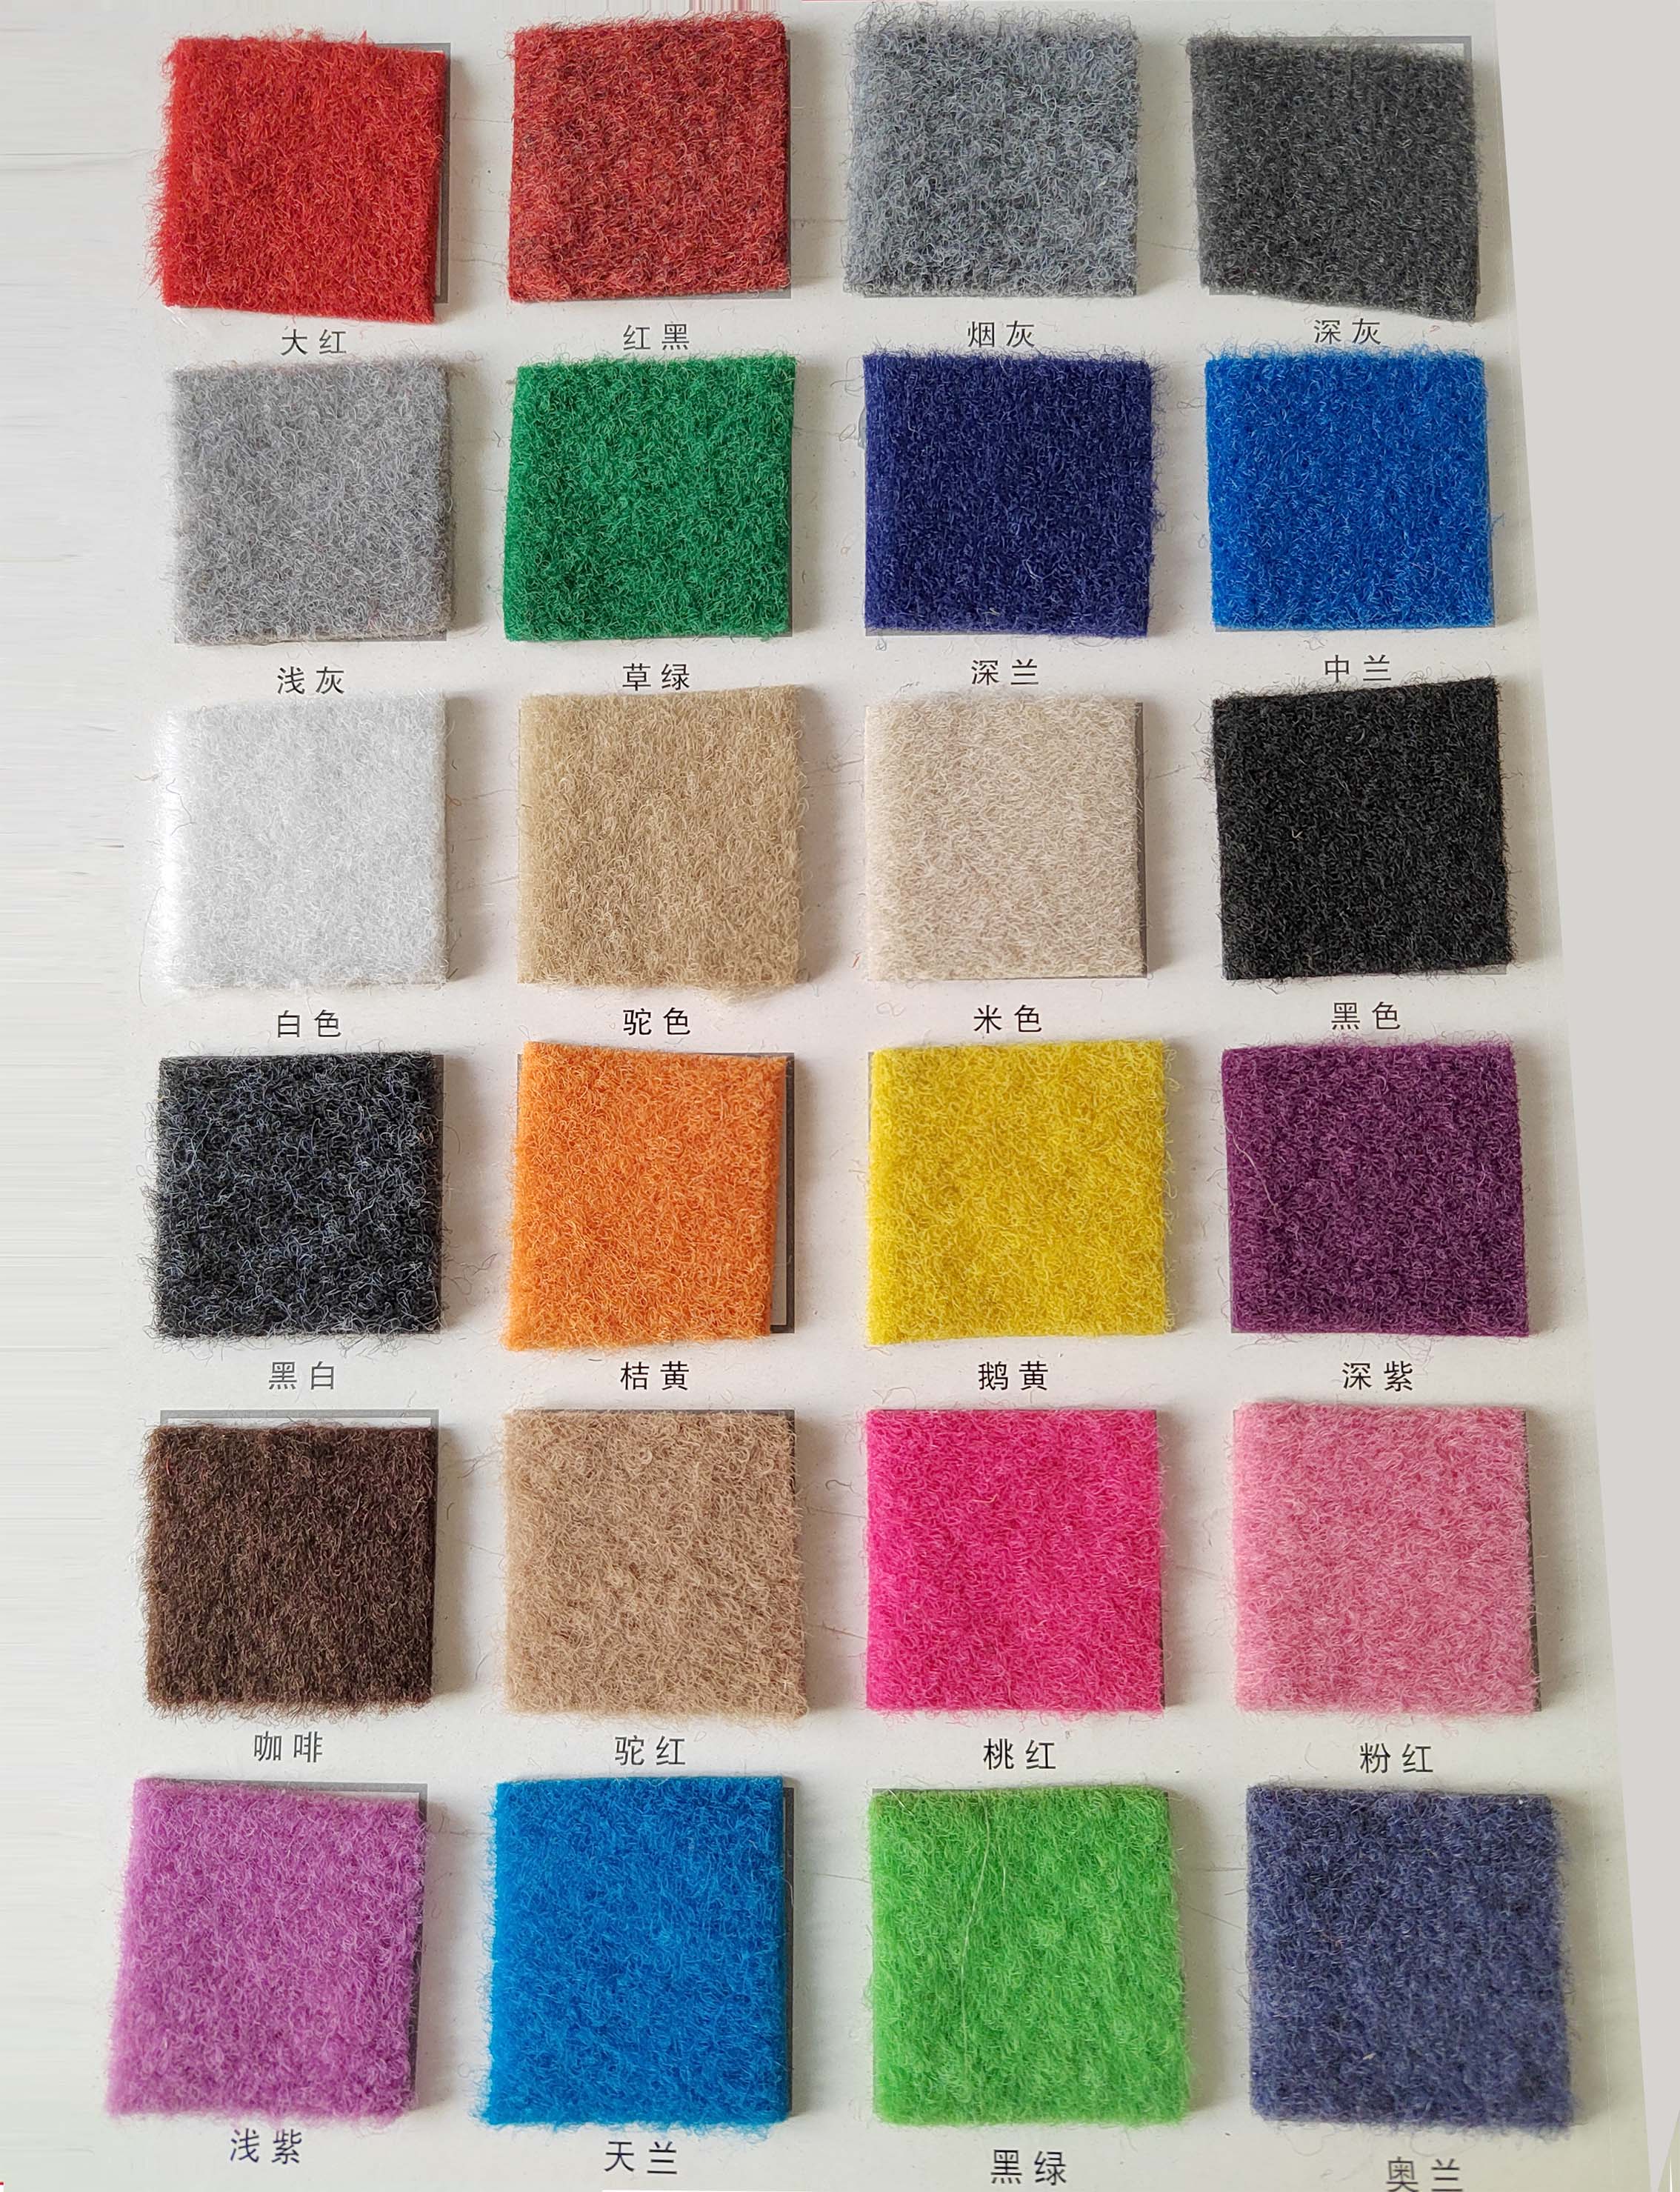 地面材料-专用地毯